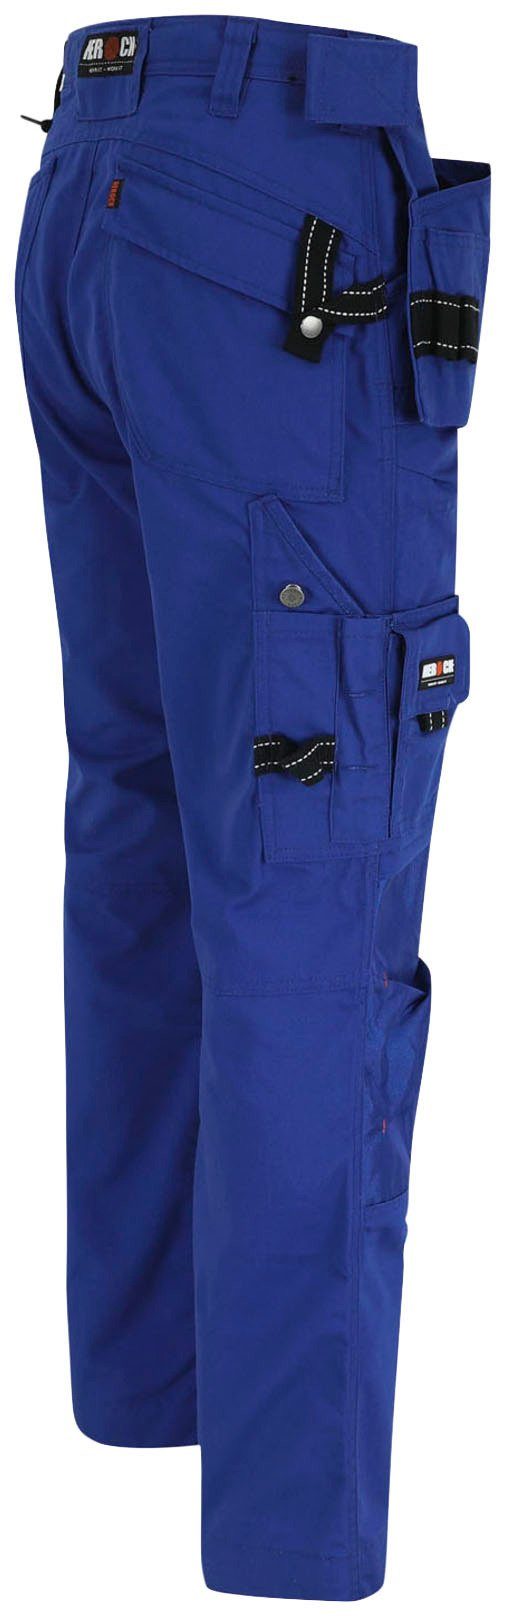 (inkl. Taschen Arbeitshose Hose Nageltaschen) Herock blau Wasserabweisend, robust, 11 Dagan